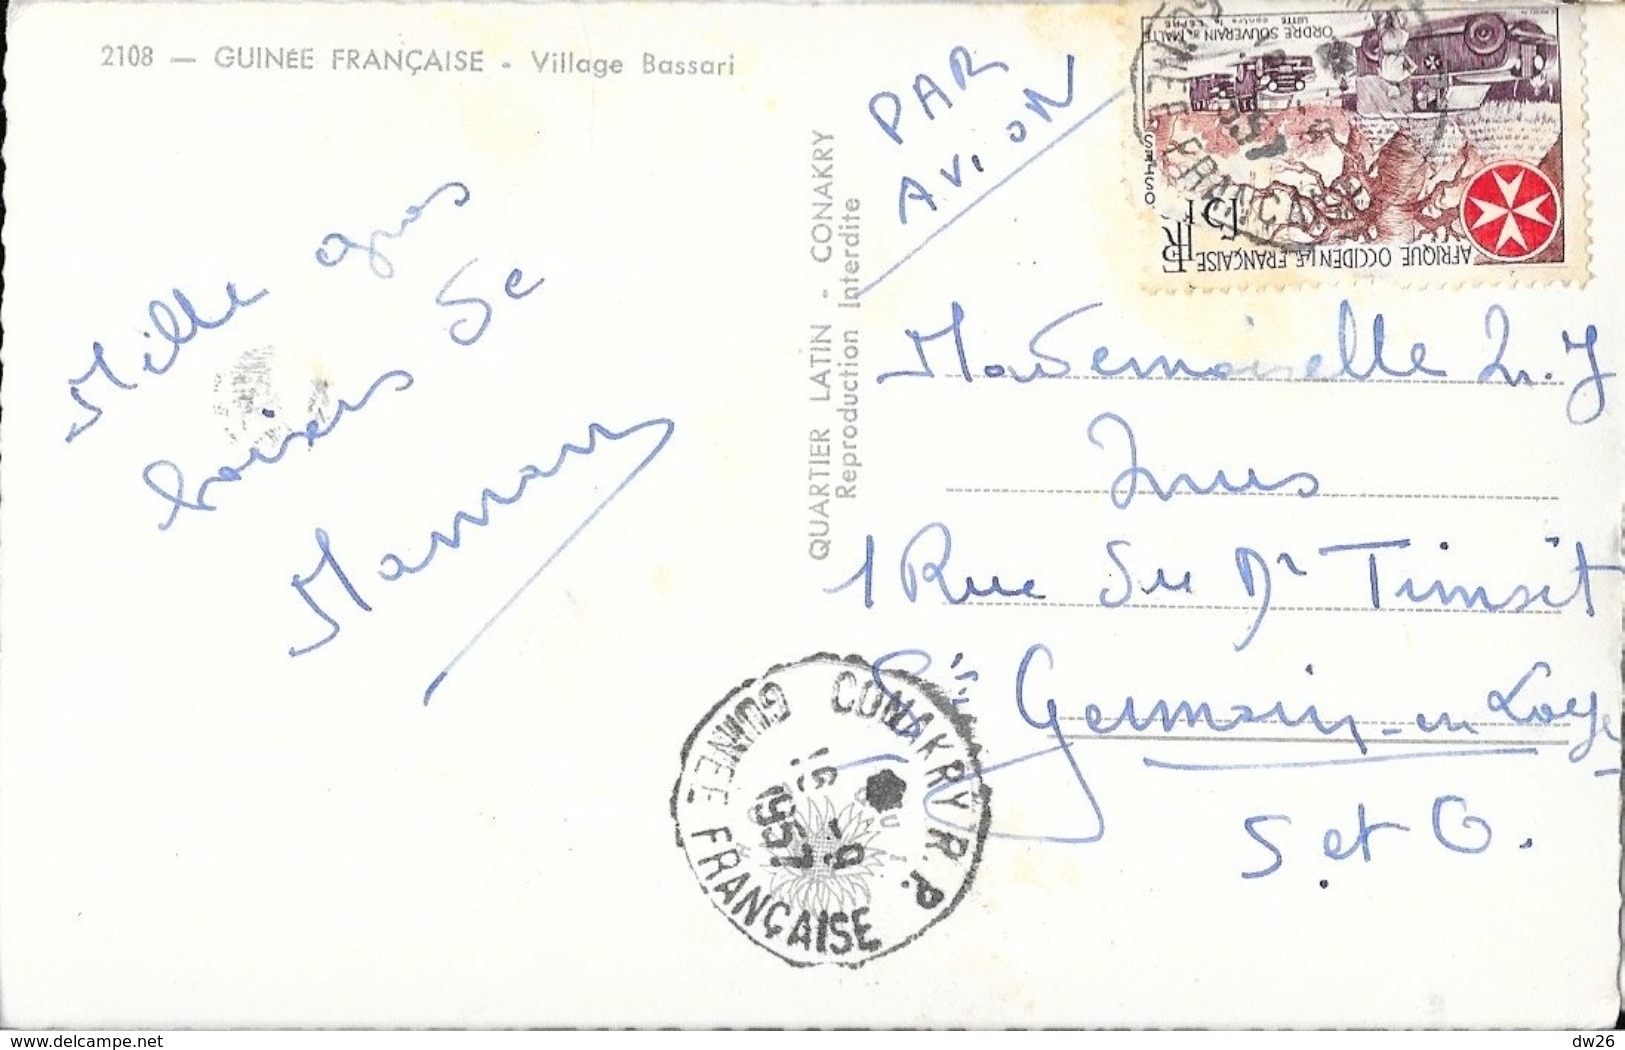 Guinée Française (A.O.F.) - Village Bassari - Edition Quartier Latin, Konakry - Französisch-Guinea